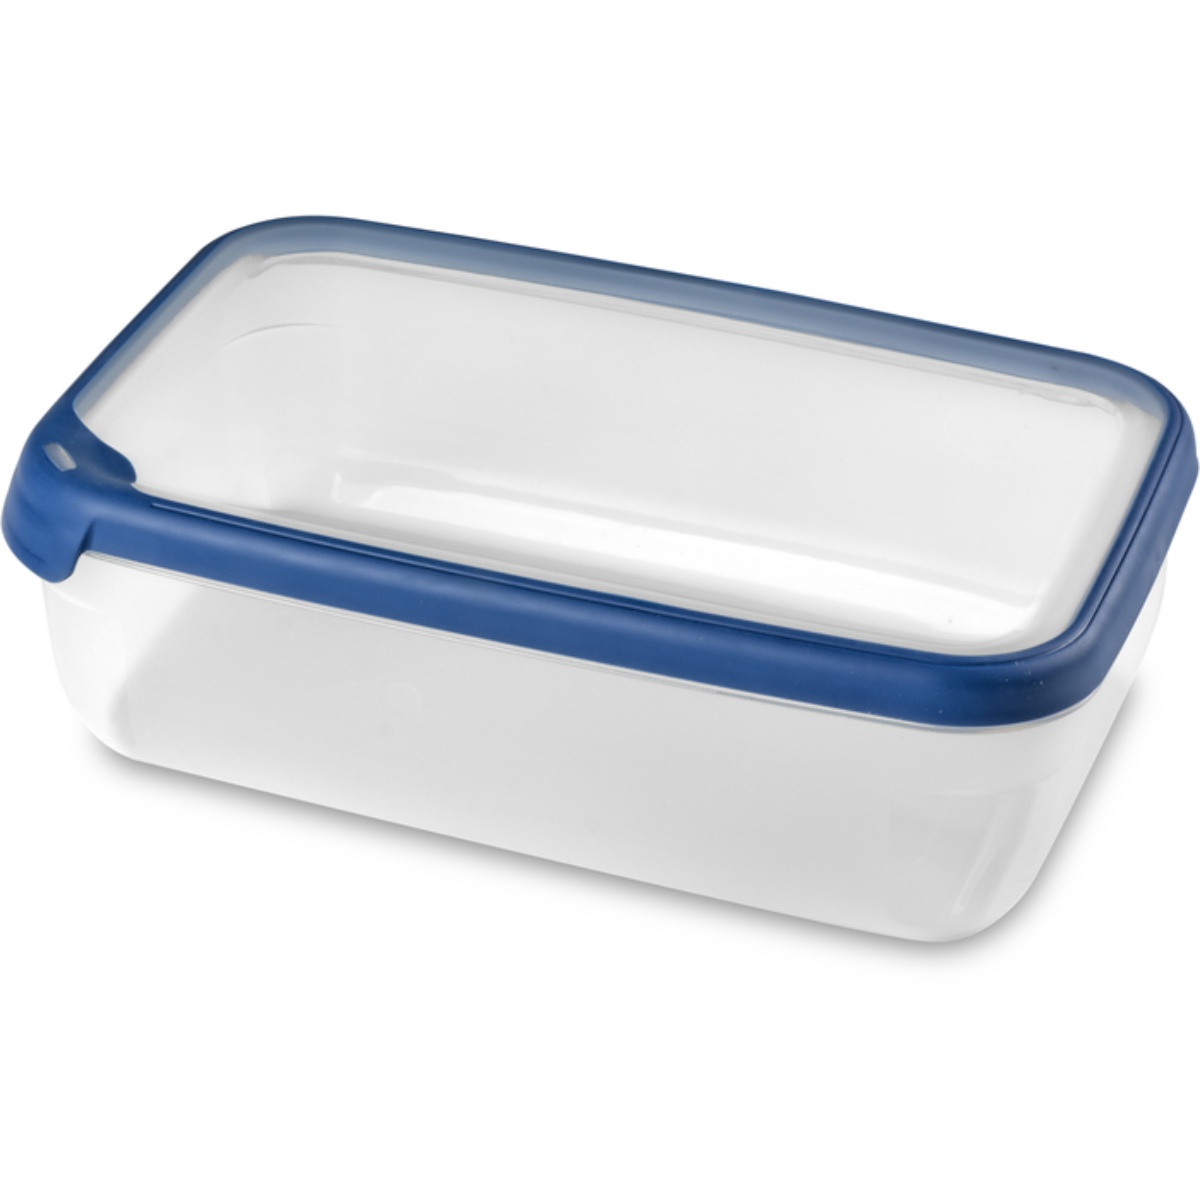 Емкость для морозилки и СВЧ GRAND CHEF 4.0л прямоугольная (синяя крышка) CURVER 00010-831-00 контейнер curver grand chef 4л 30х20х9см прямоуг пластик